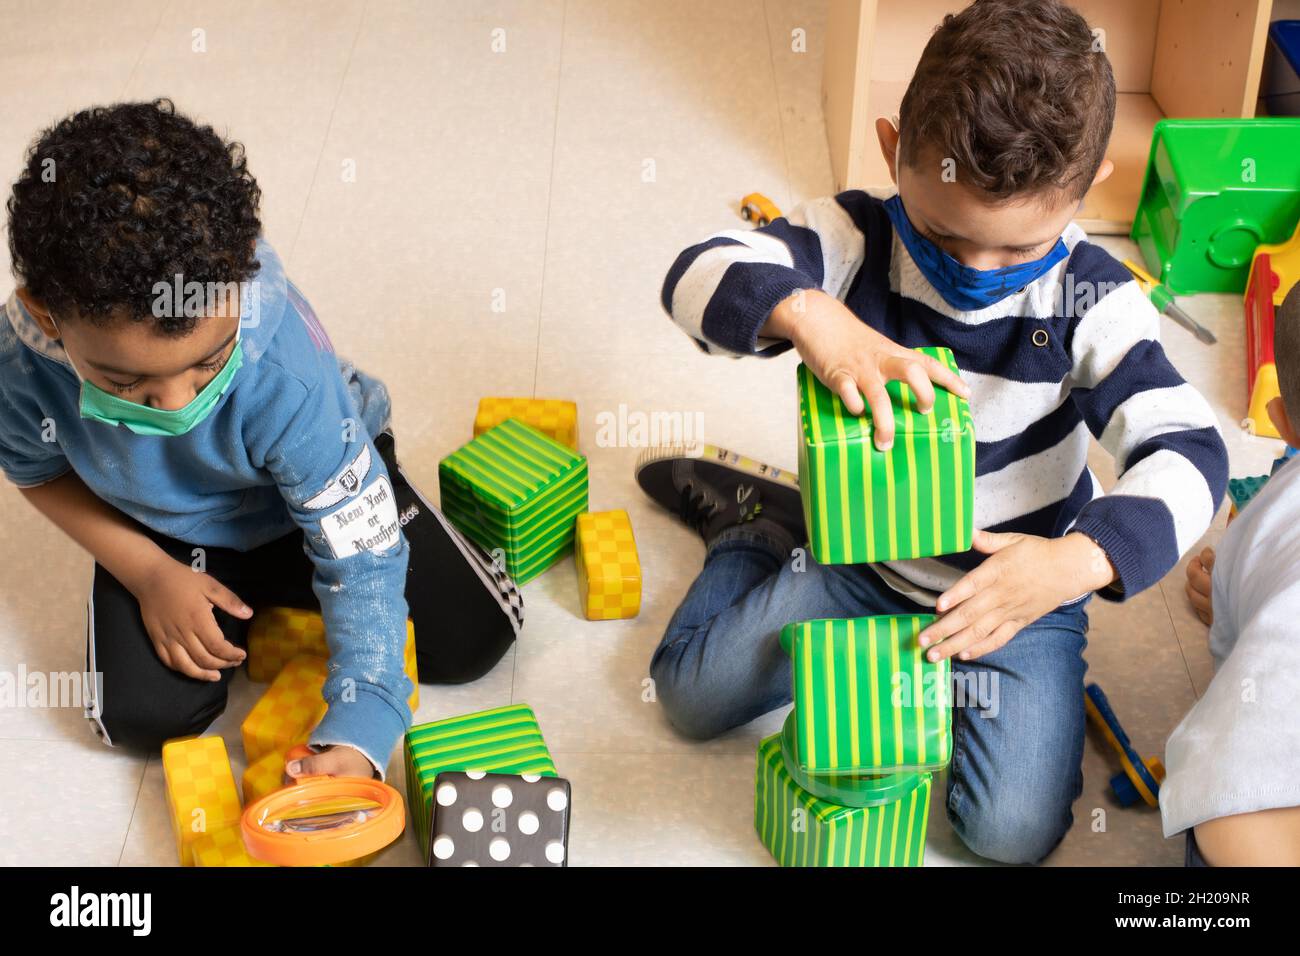 Educación Preescolar Niños de 3-4 años Dos niños jugando por separado en el salón de clase, un edificio con bloques el otro usando una lupa que ambos usan Foto de stock